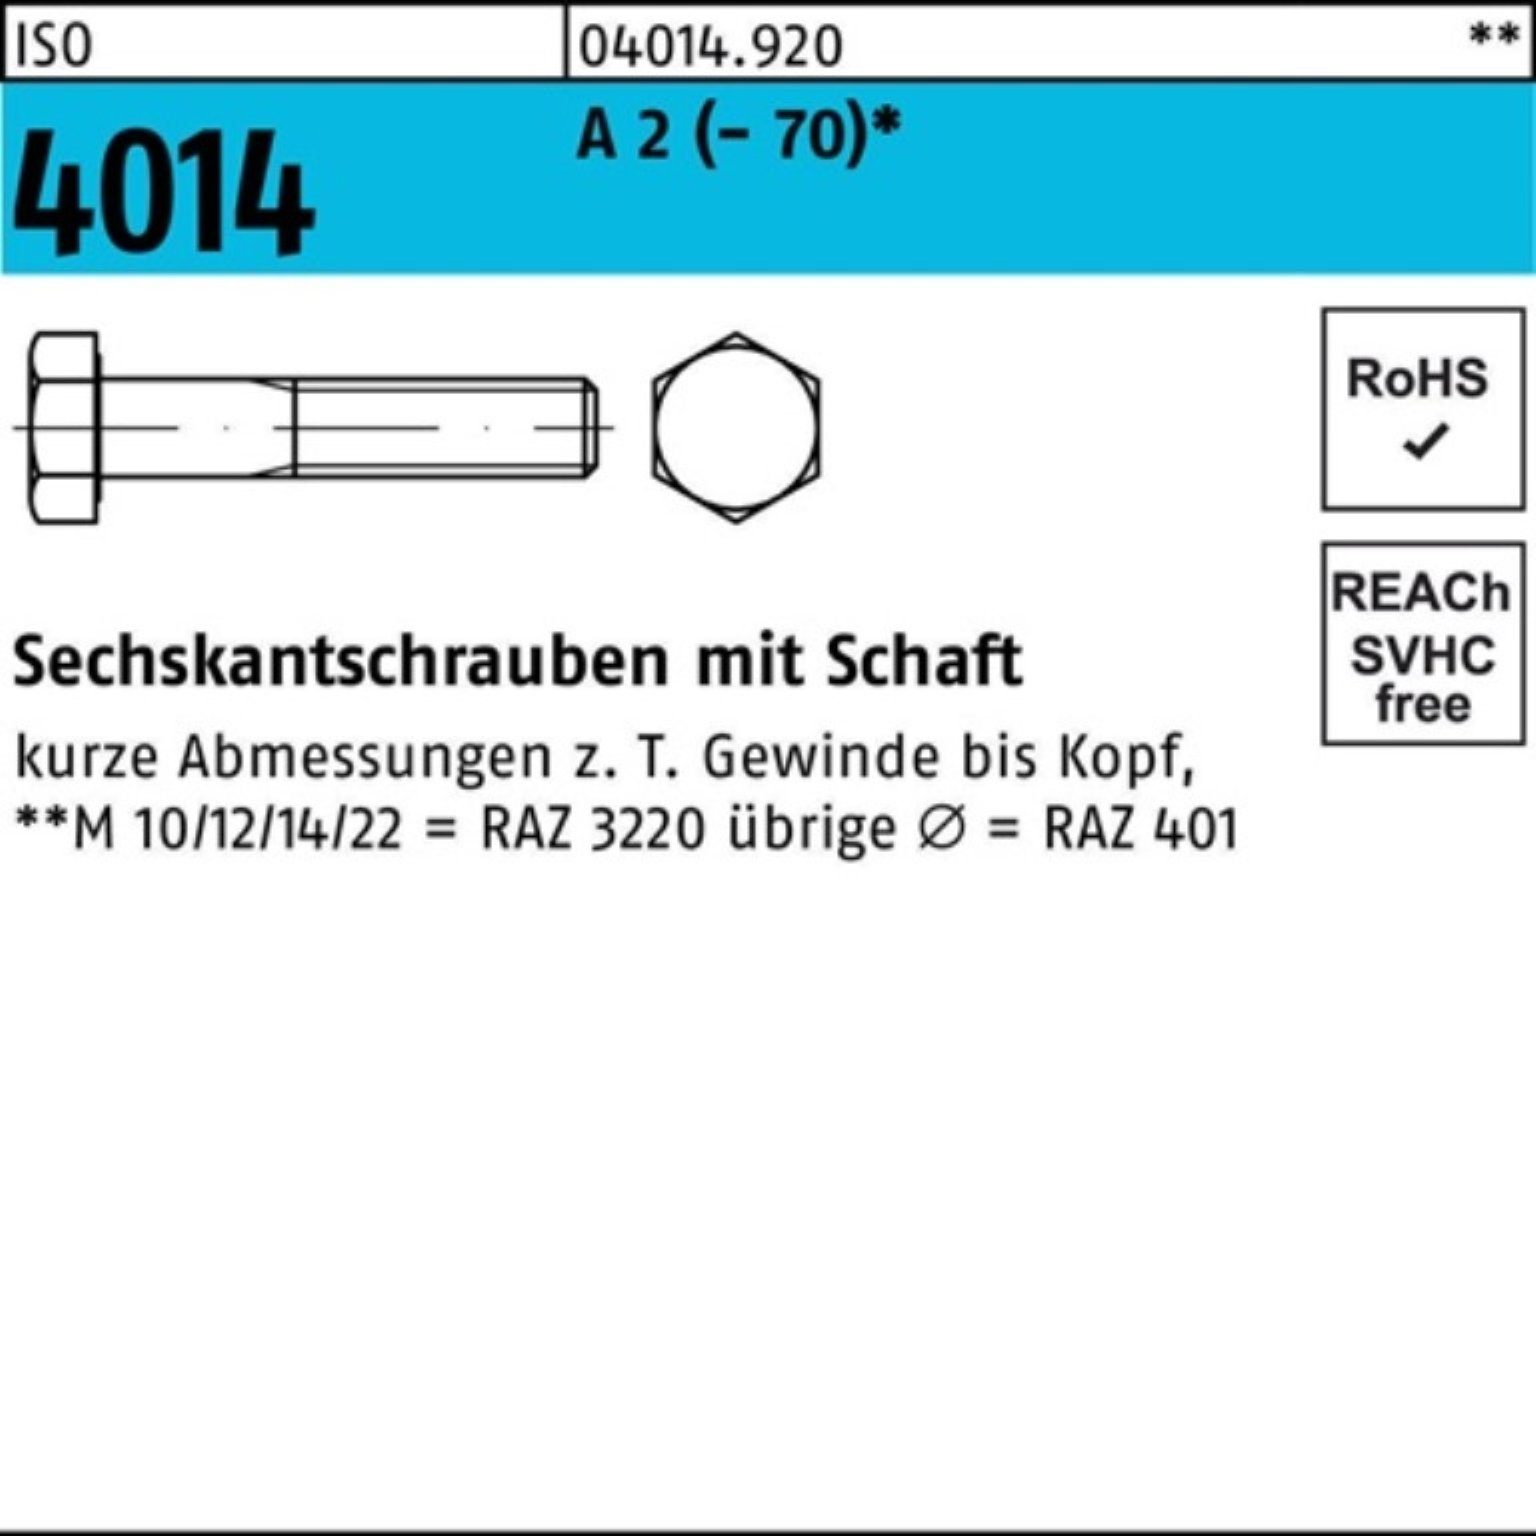 Pack 4014 (70) Sechskantschraube Bufab ISO St 150 2 M14x 100er Schaft A 1 Sechskantschraube